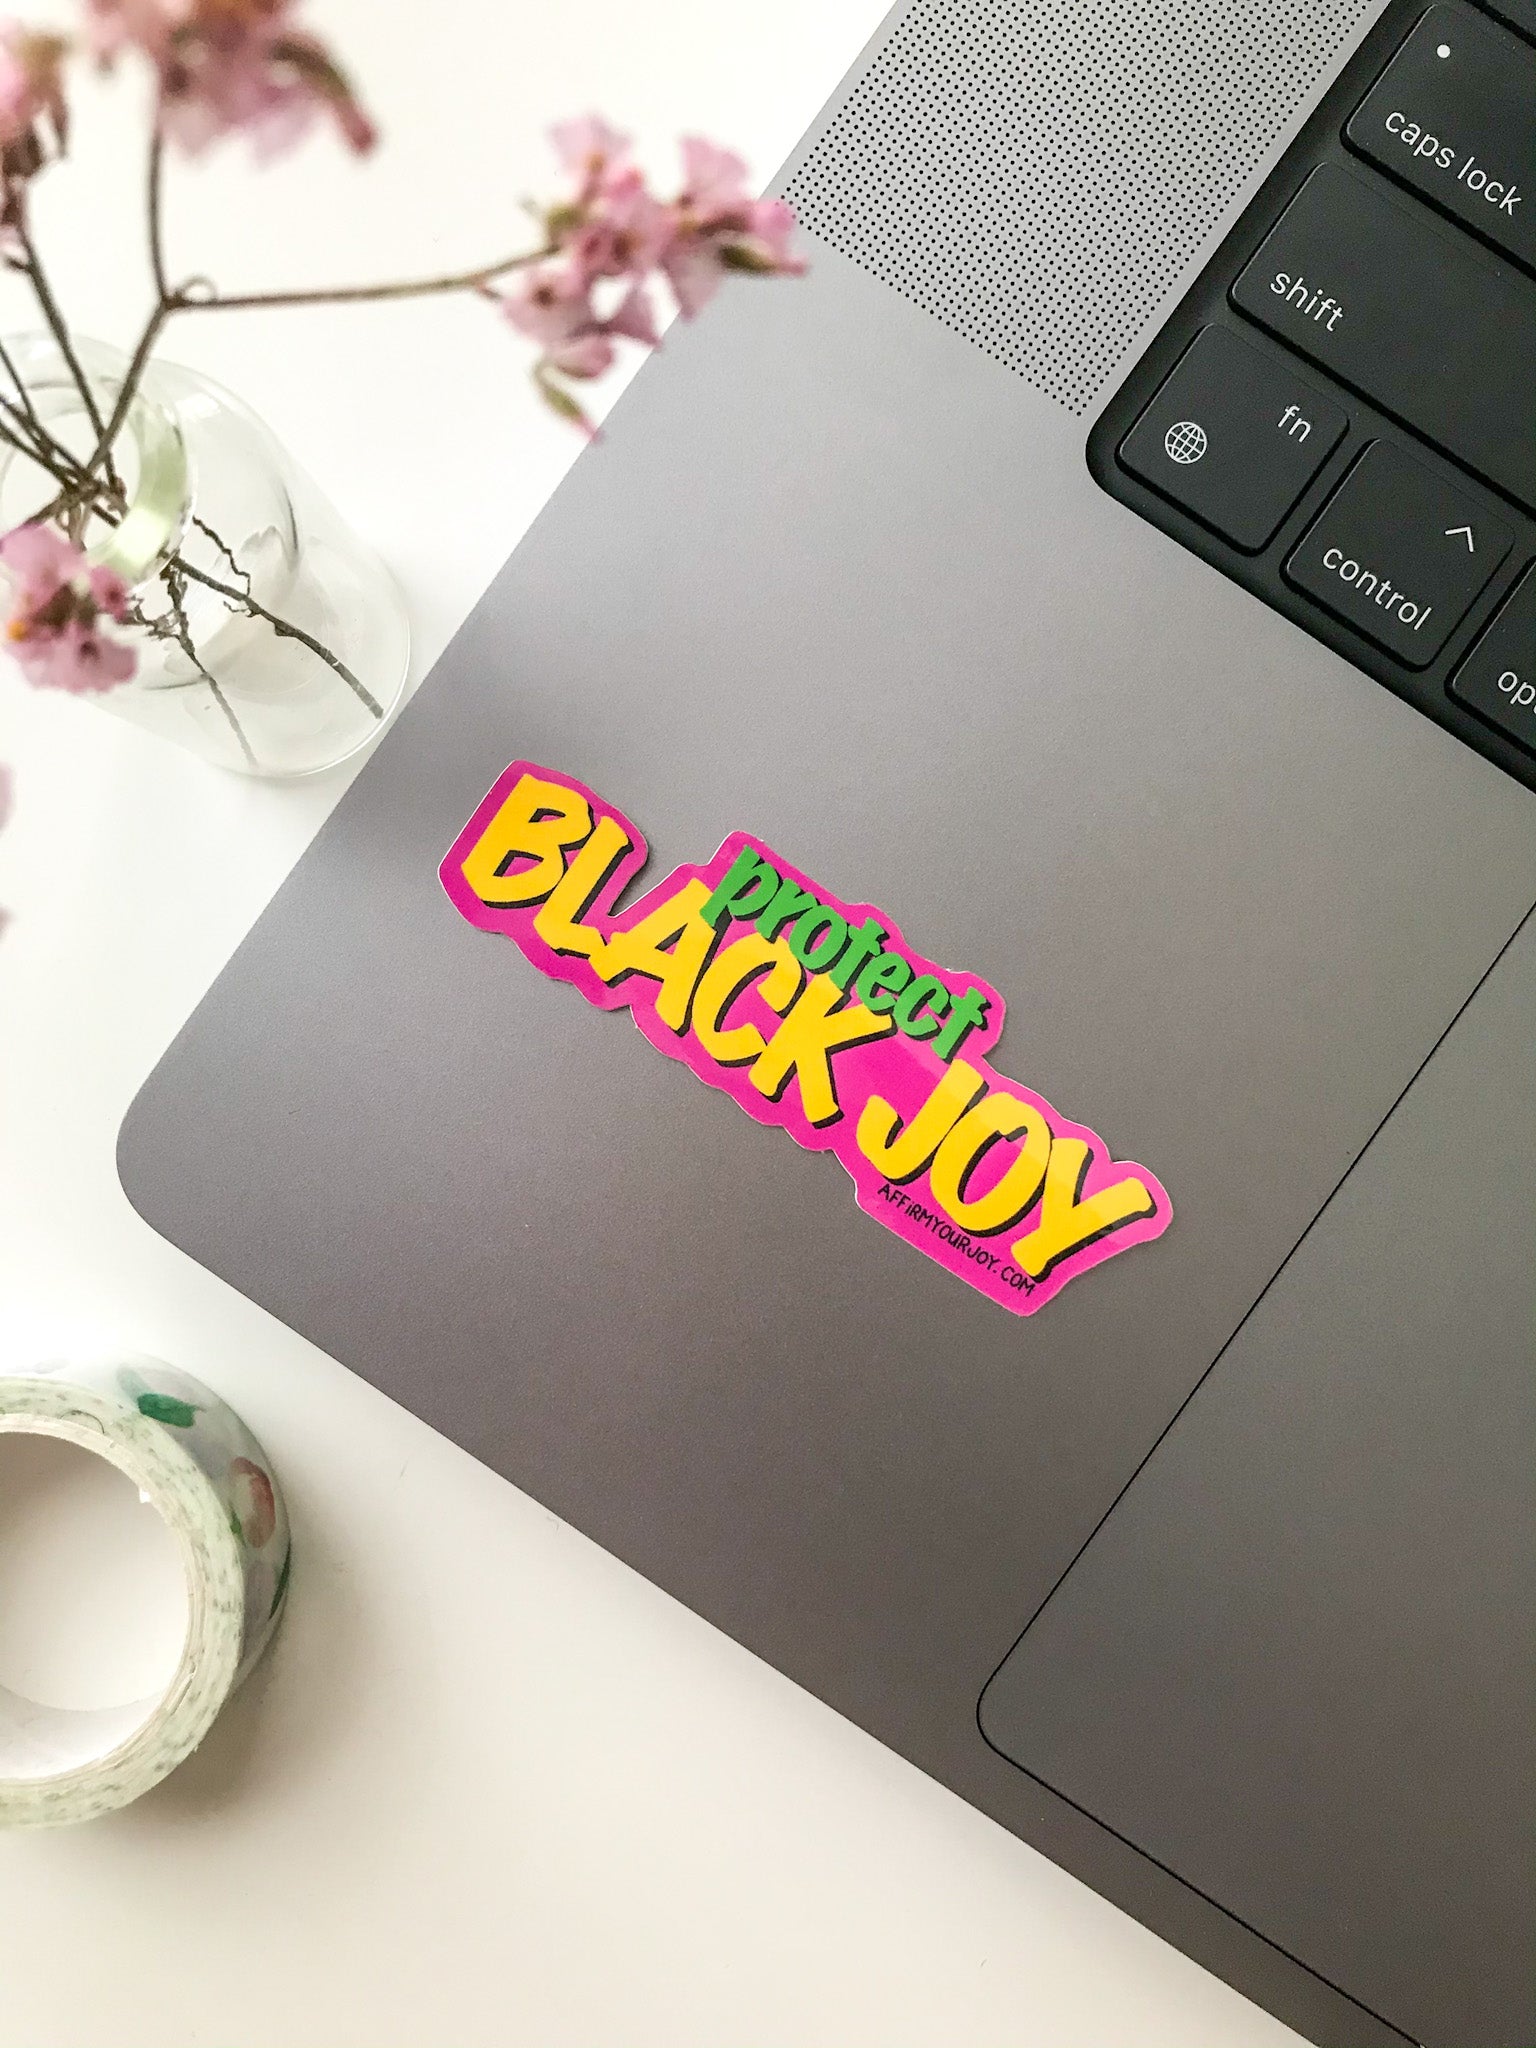 "Protect Black Joy" sticker on a laptop